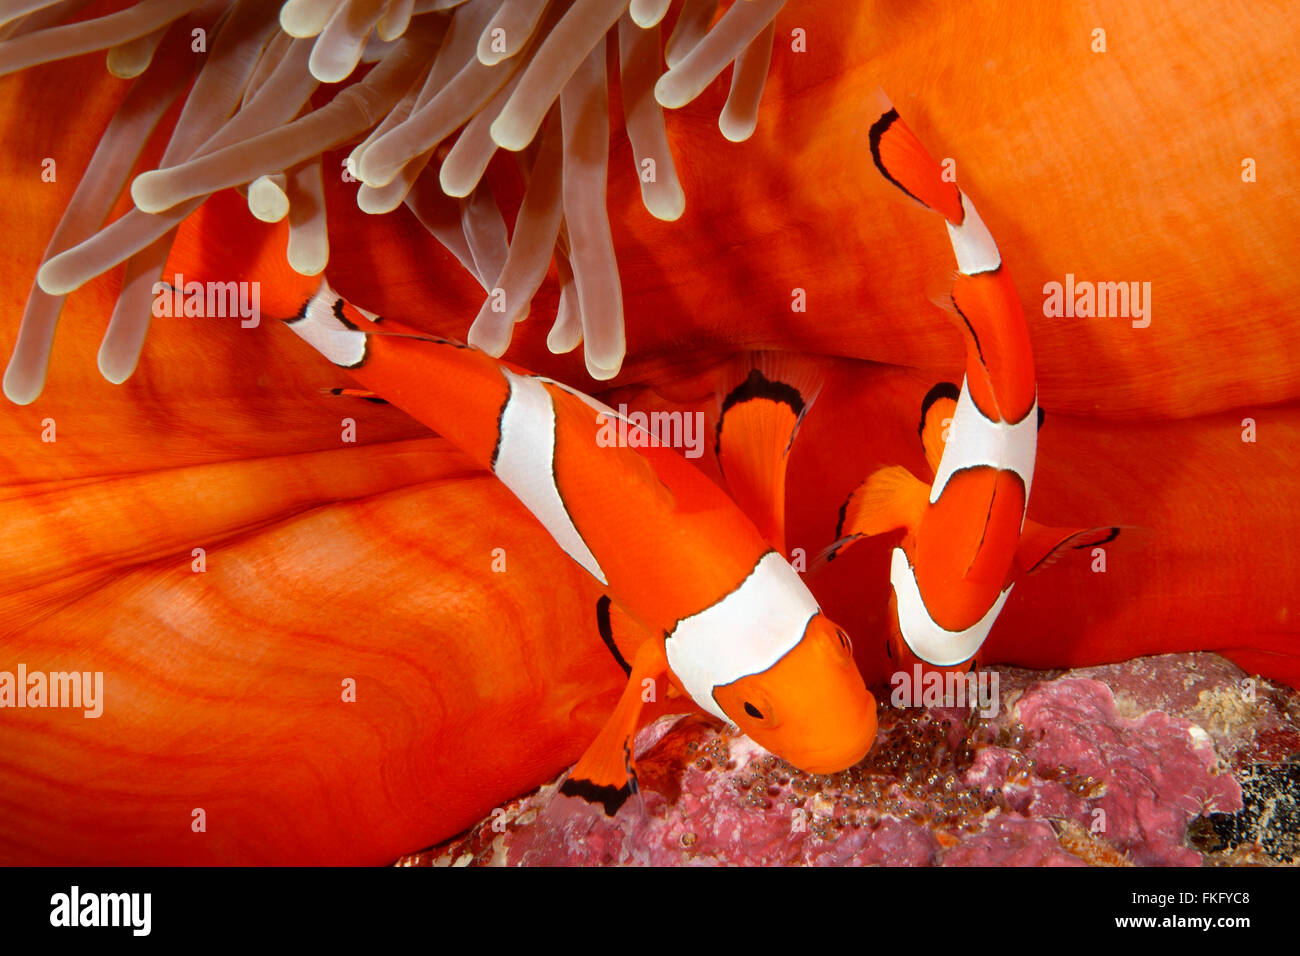 Coppia di clown, Anemonefish Amphiprion percula, tendendo le uova deposte alla base dell'ospite magnifico Anemone, Heteractis magnifica. Foto Stock